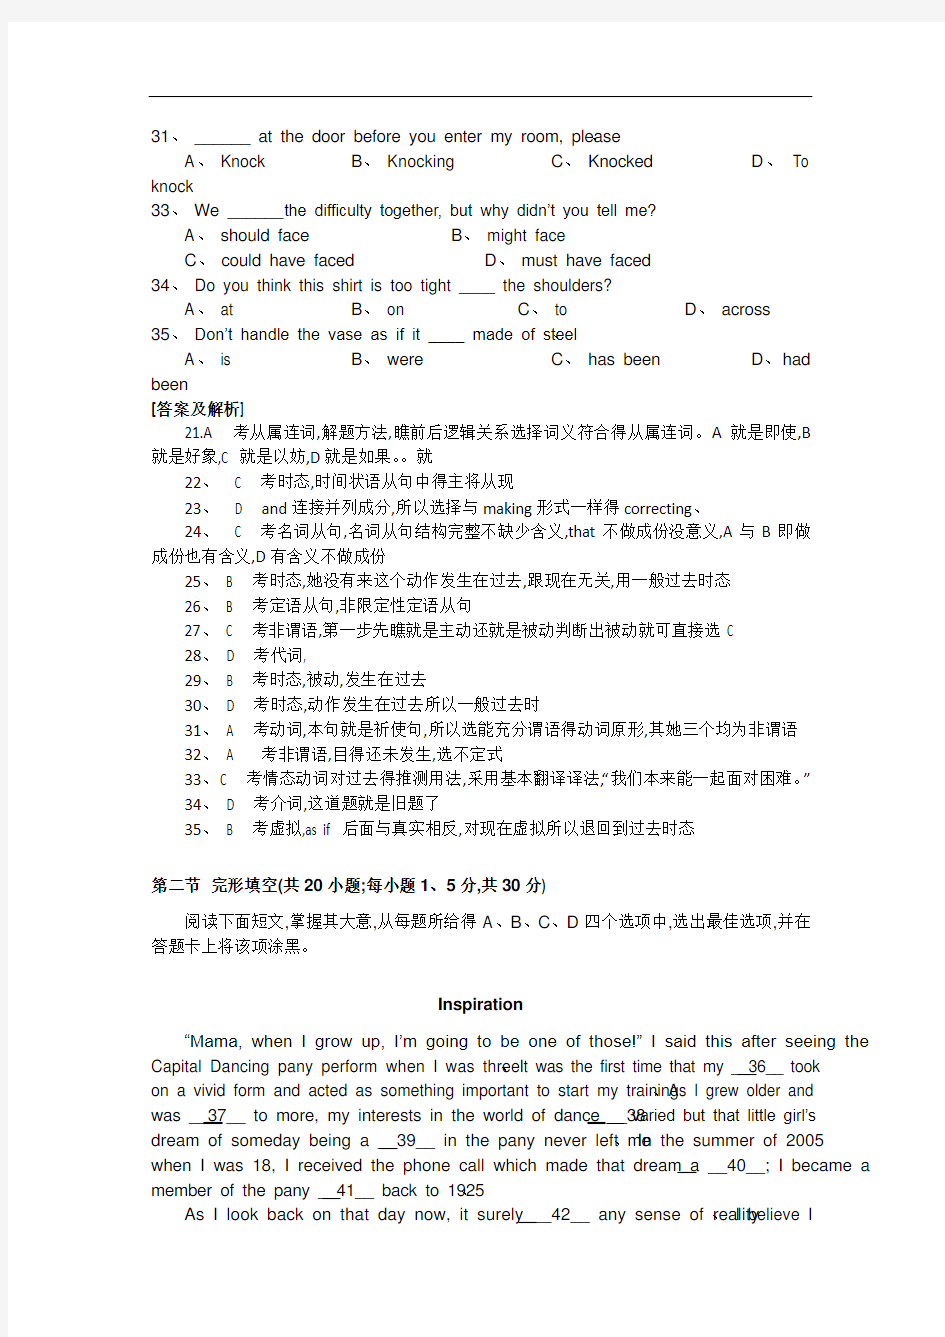 2012年高考英语北京试题及答案(解析版)